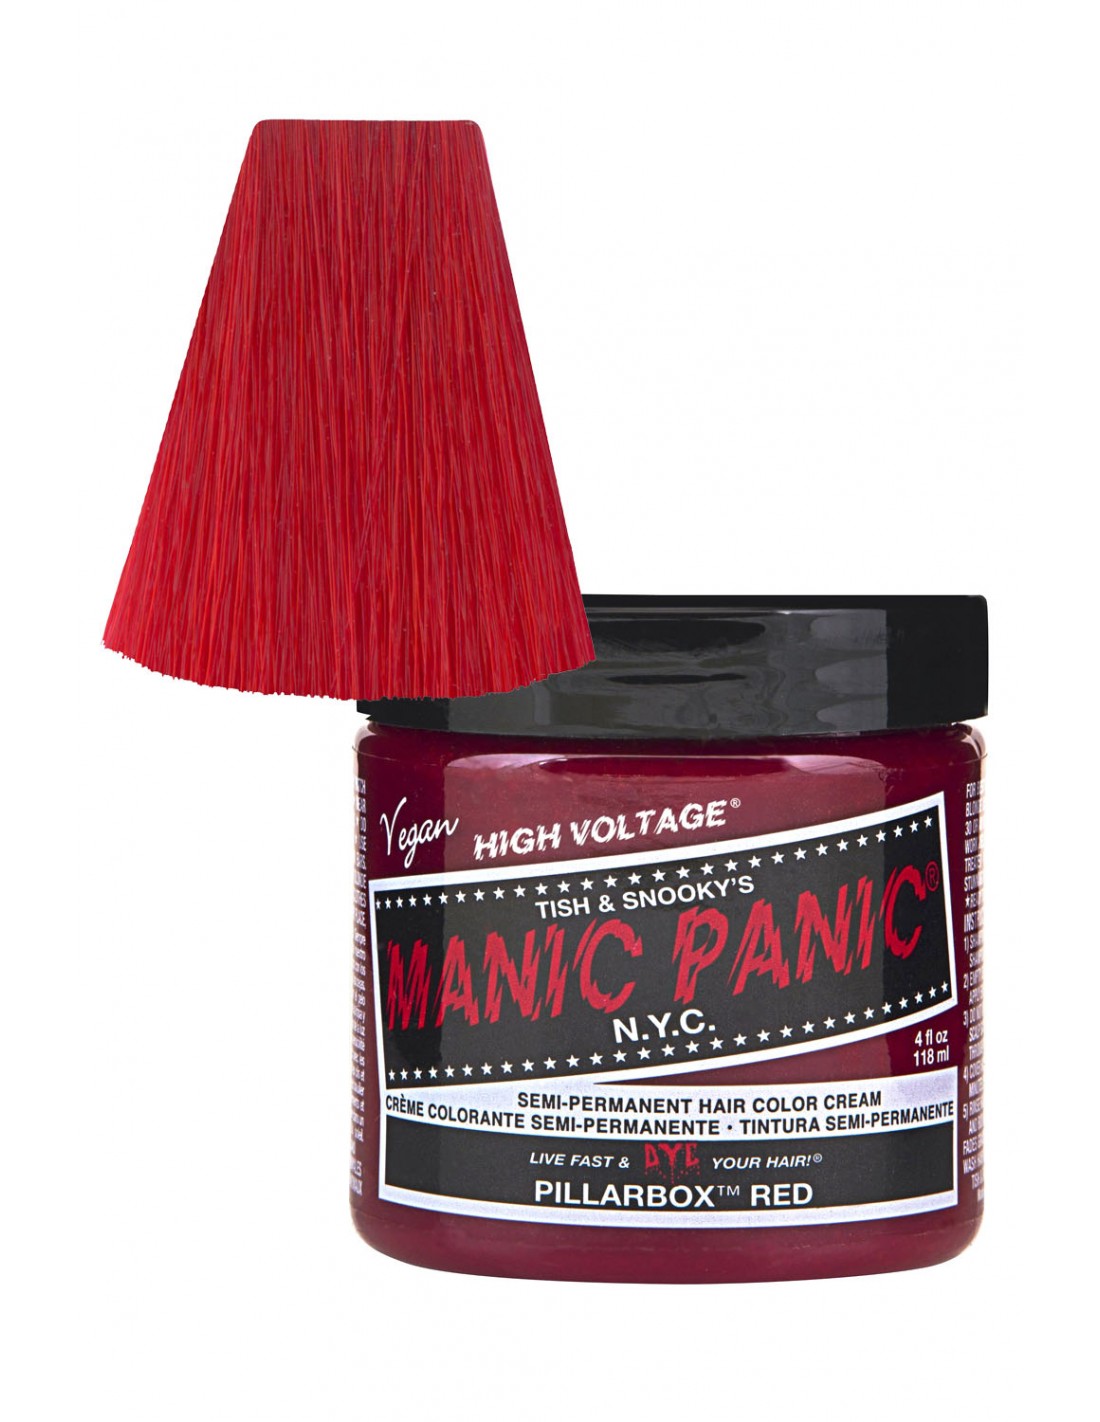 Manic Panic Hair Dye - Pillarbox Red - Classic Cream Formula